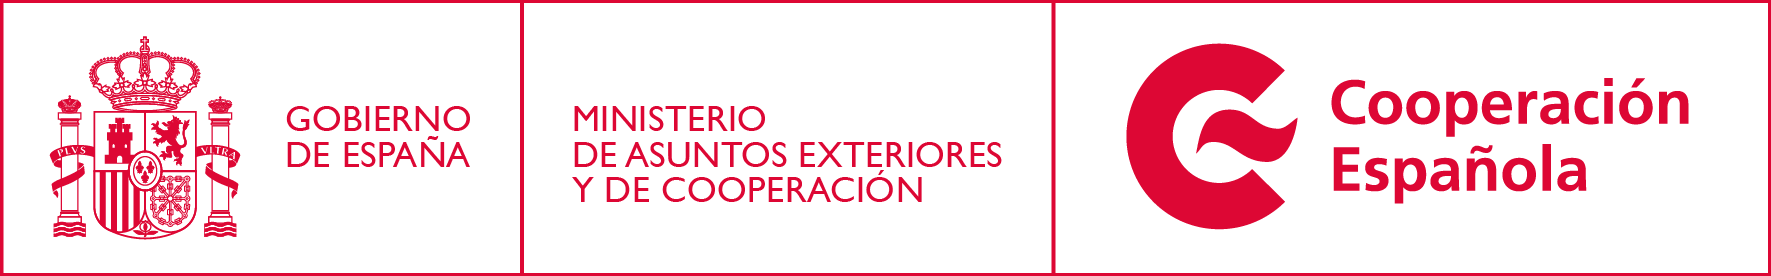 Logos Cooperación Española